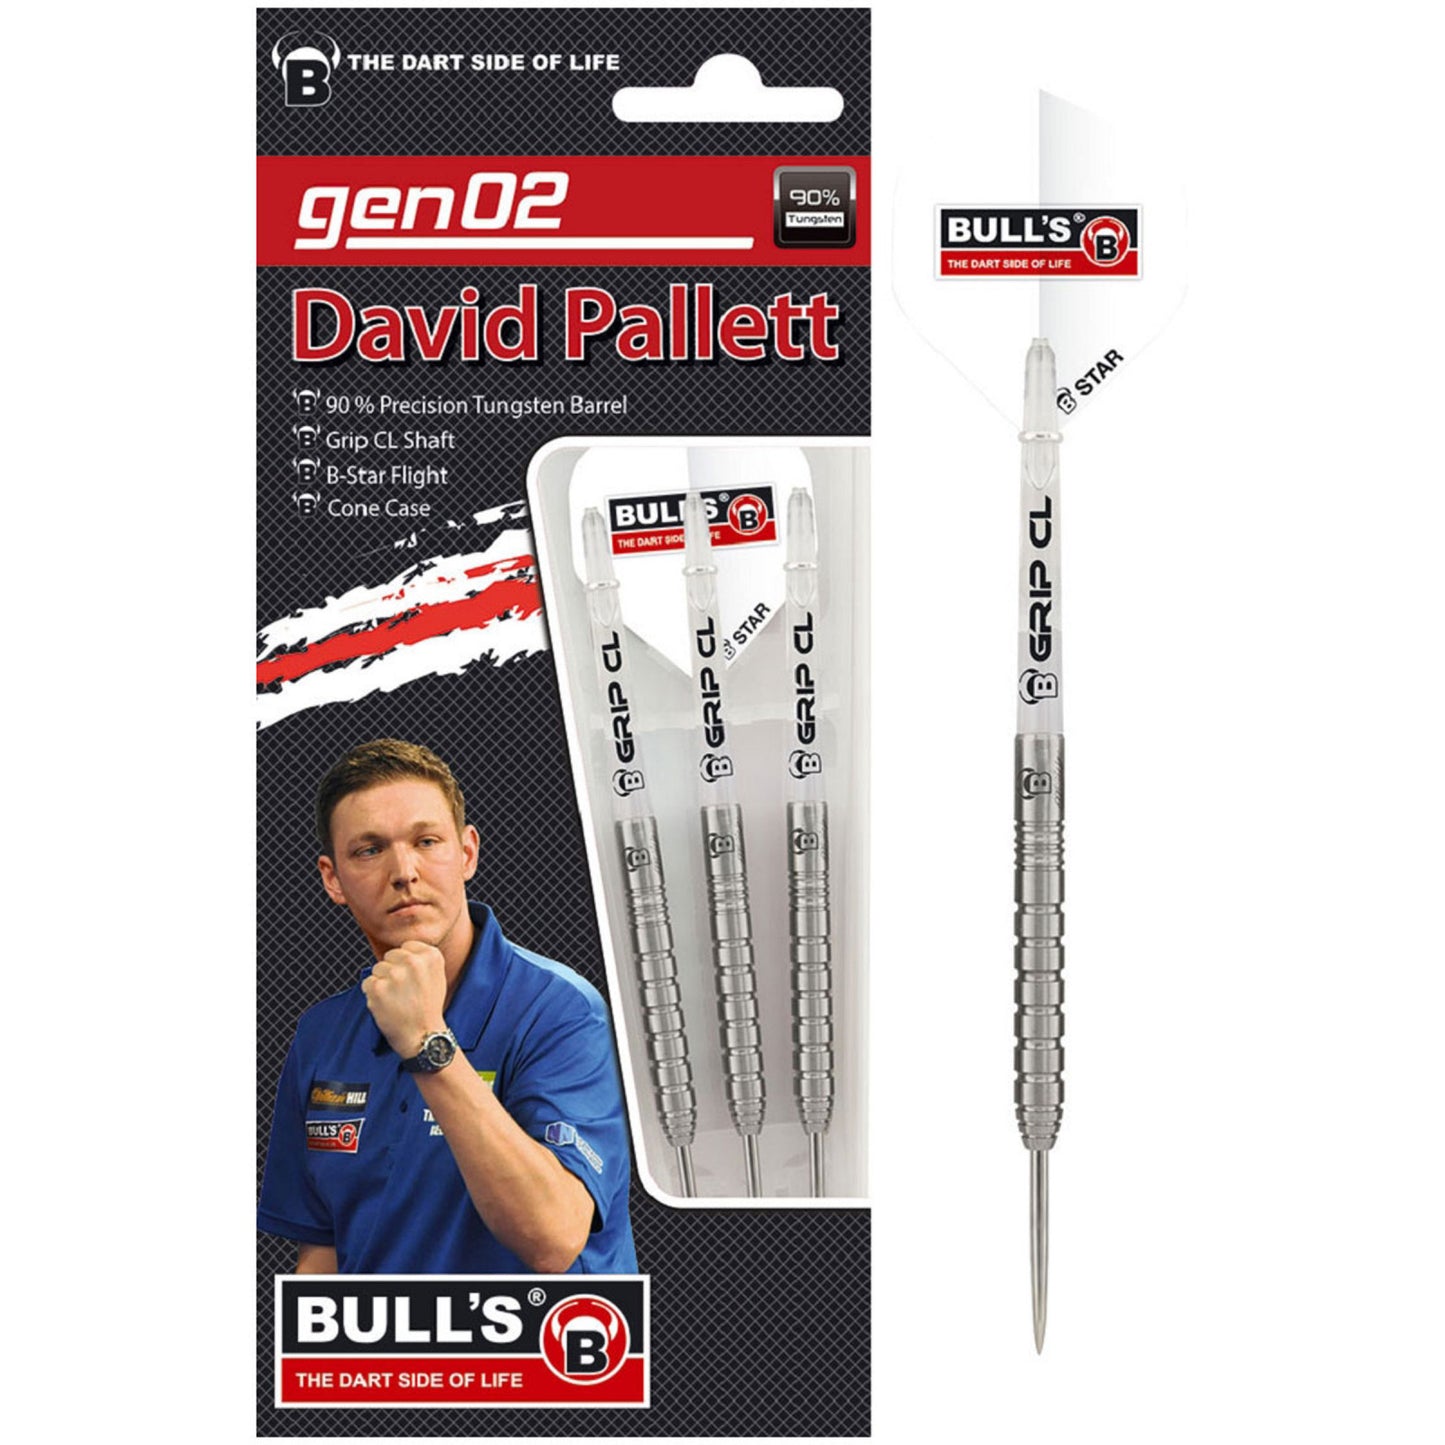 BULL'S - DAVID PALLETT - 90% - STEEL TIP DARTS - 20g